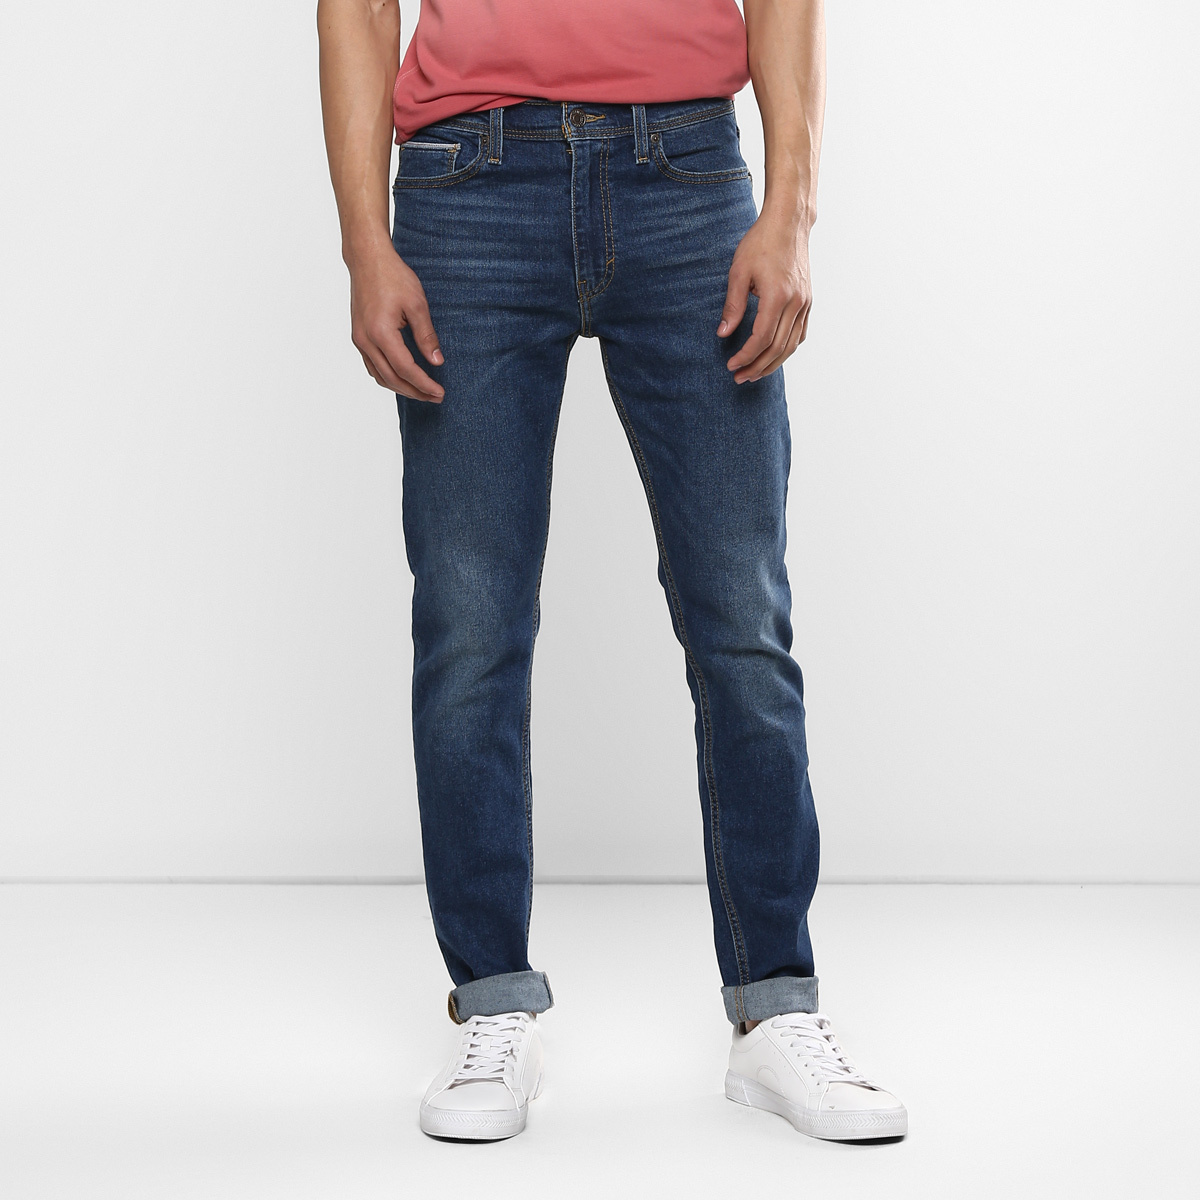 LEVIS MEN Single Length Jeans 86674-0001 Blue 36